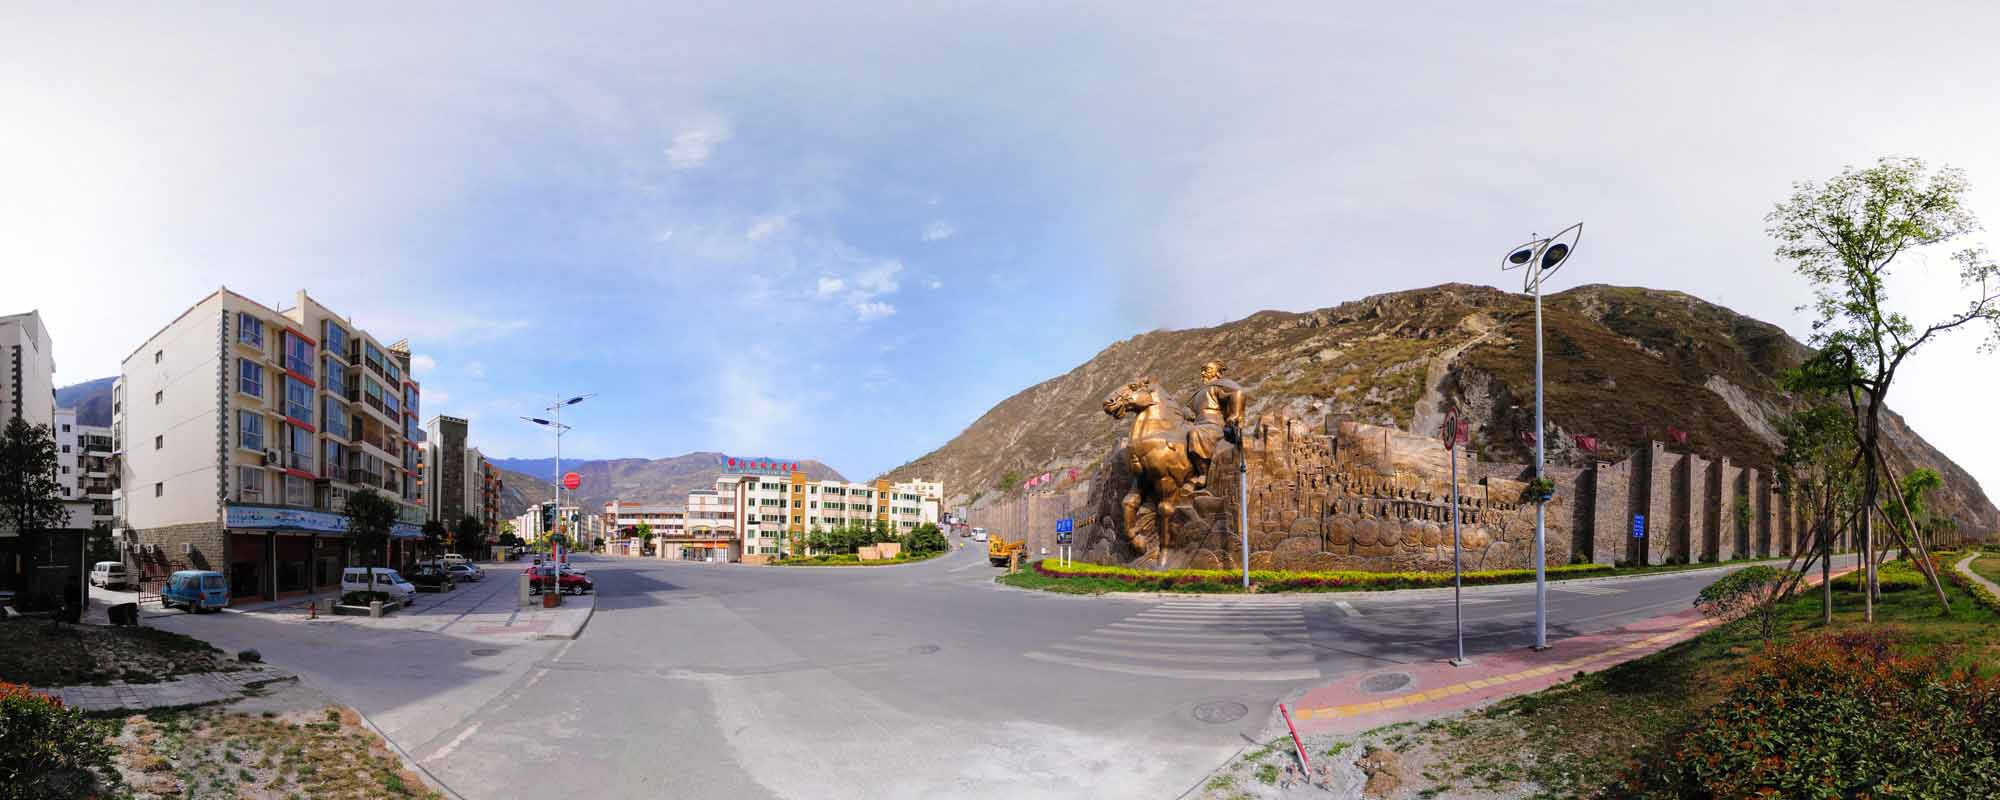 甘孜藏族自治州虚拟旅游